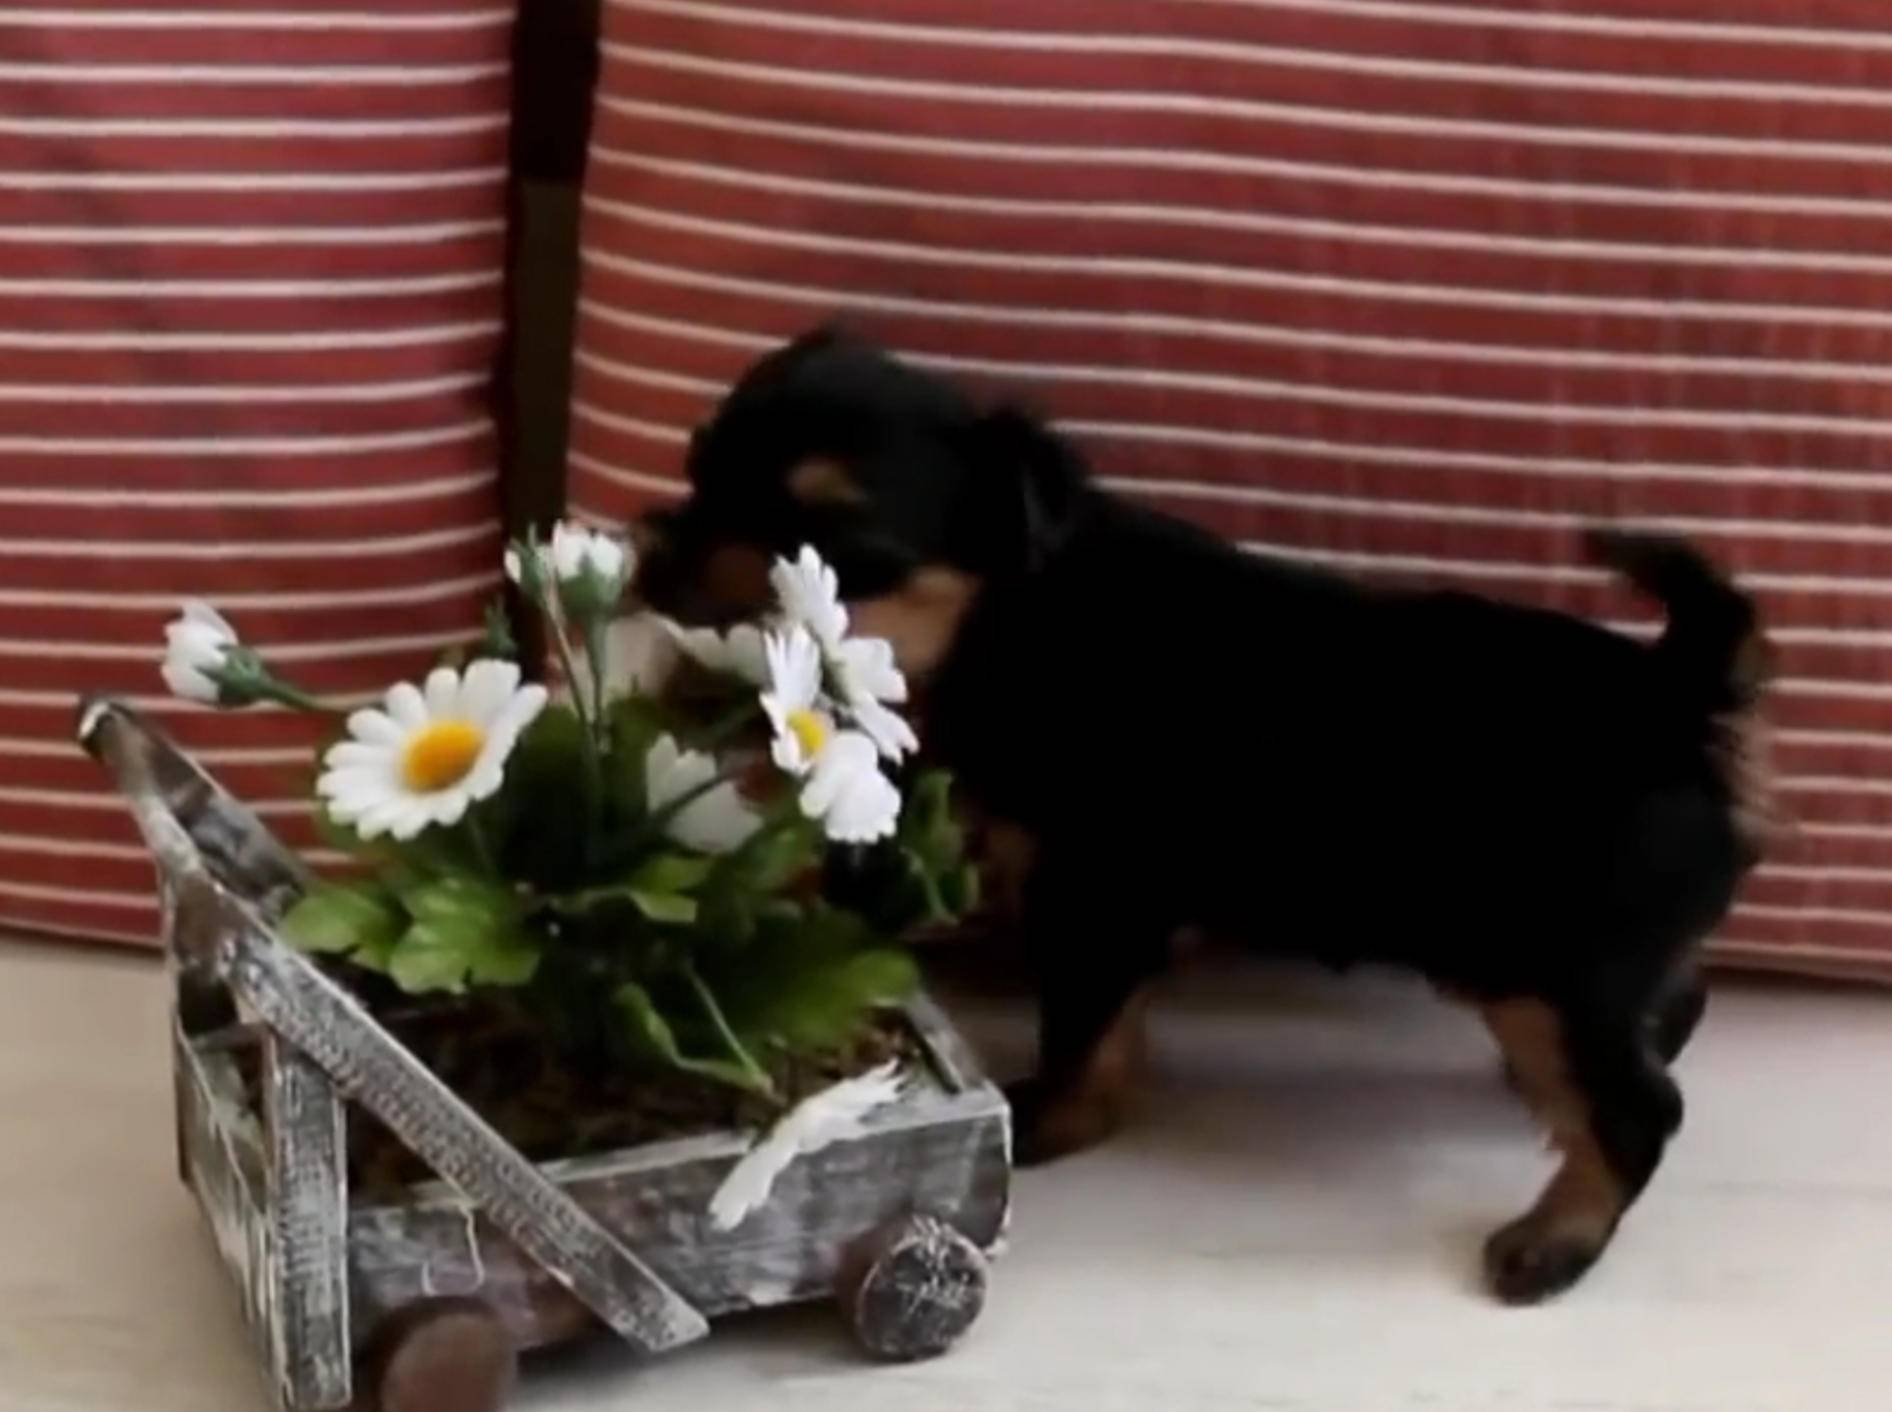 Yorkshire Terrier: "Ich liebe Margeriten!" – Bild: YouTube / Miss Aww